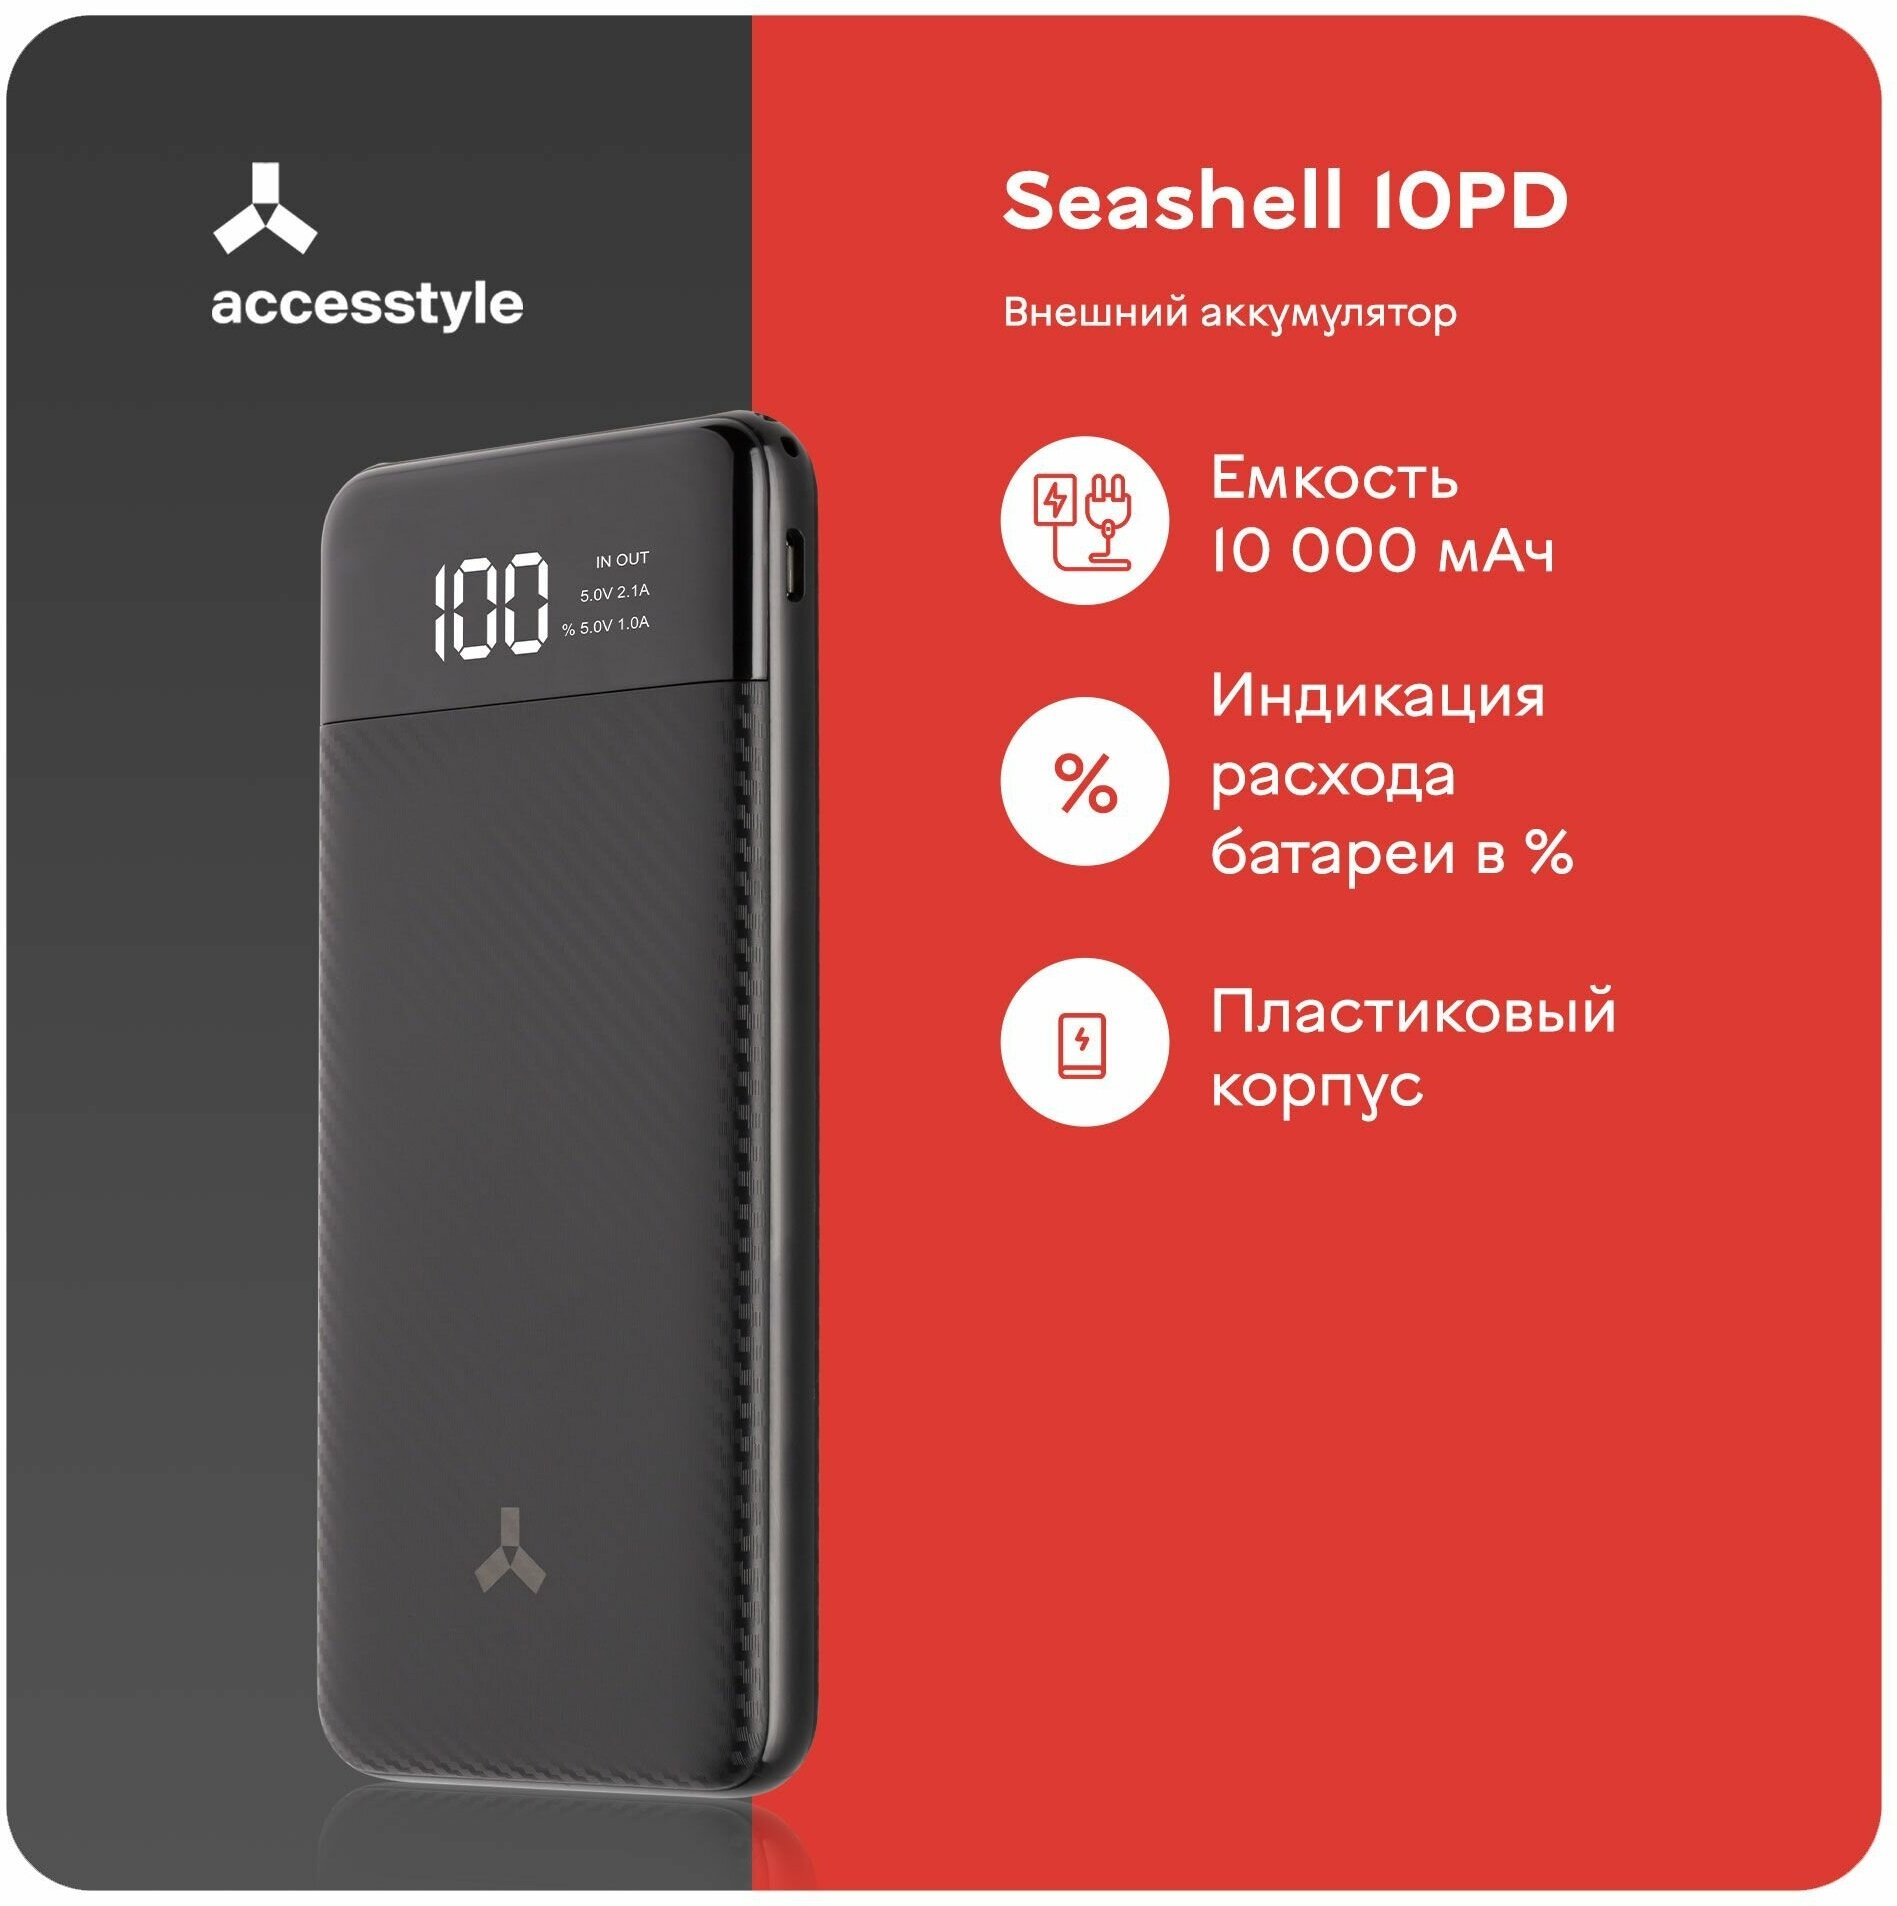 Портативный аккумулятор Accesstyle Seashell 10PD